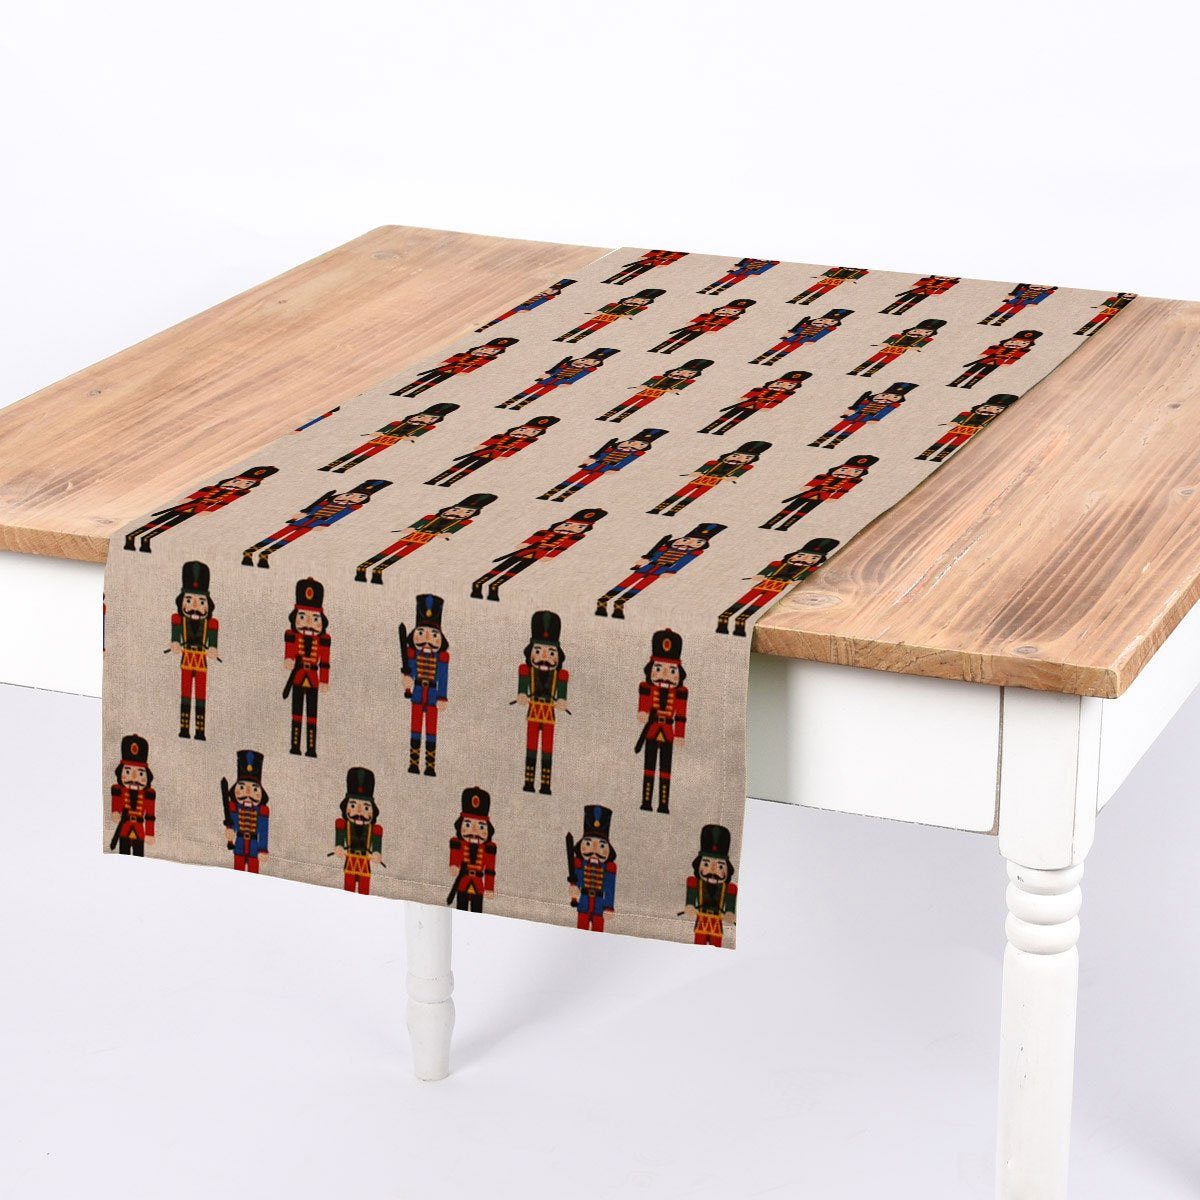 Tischläufer Tischläufer LEBEN. SCHÖNER handmade rot LEBEN. 40x160cm, Nussknacker grün natur SCHÖNER blau